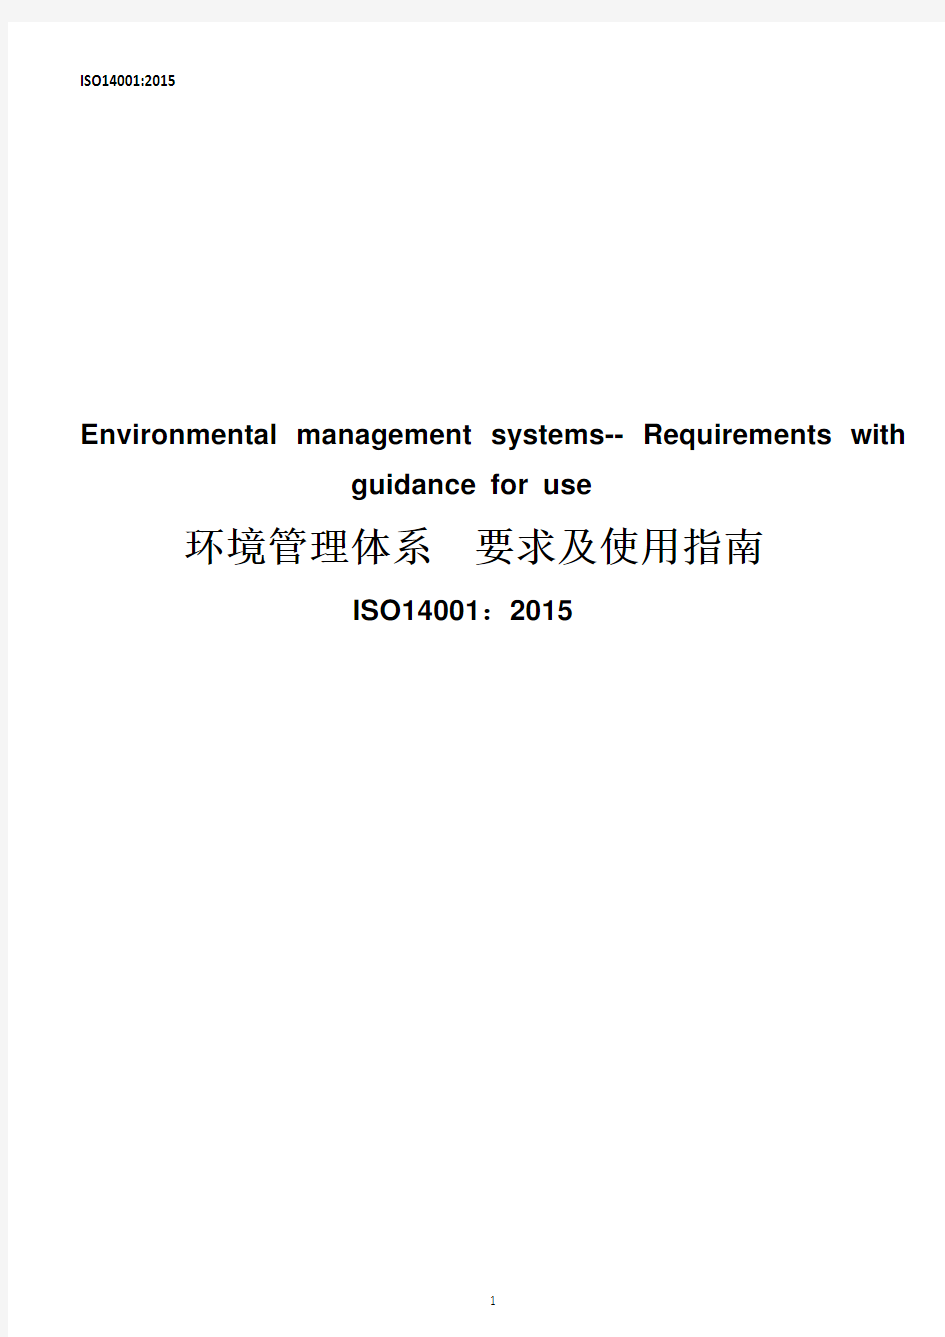 ISO 14001：2015 环境管理体系 要求及使用指南